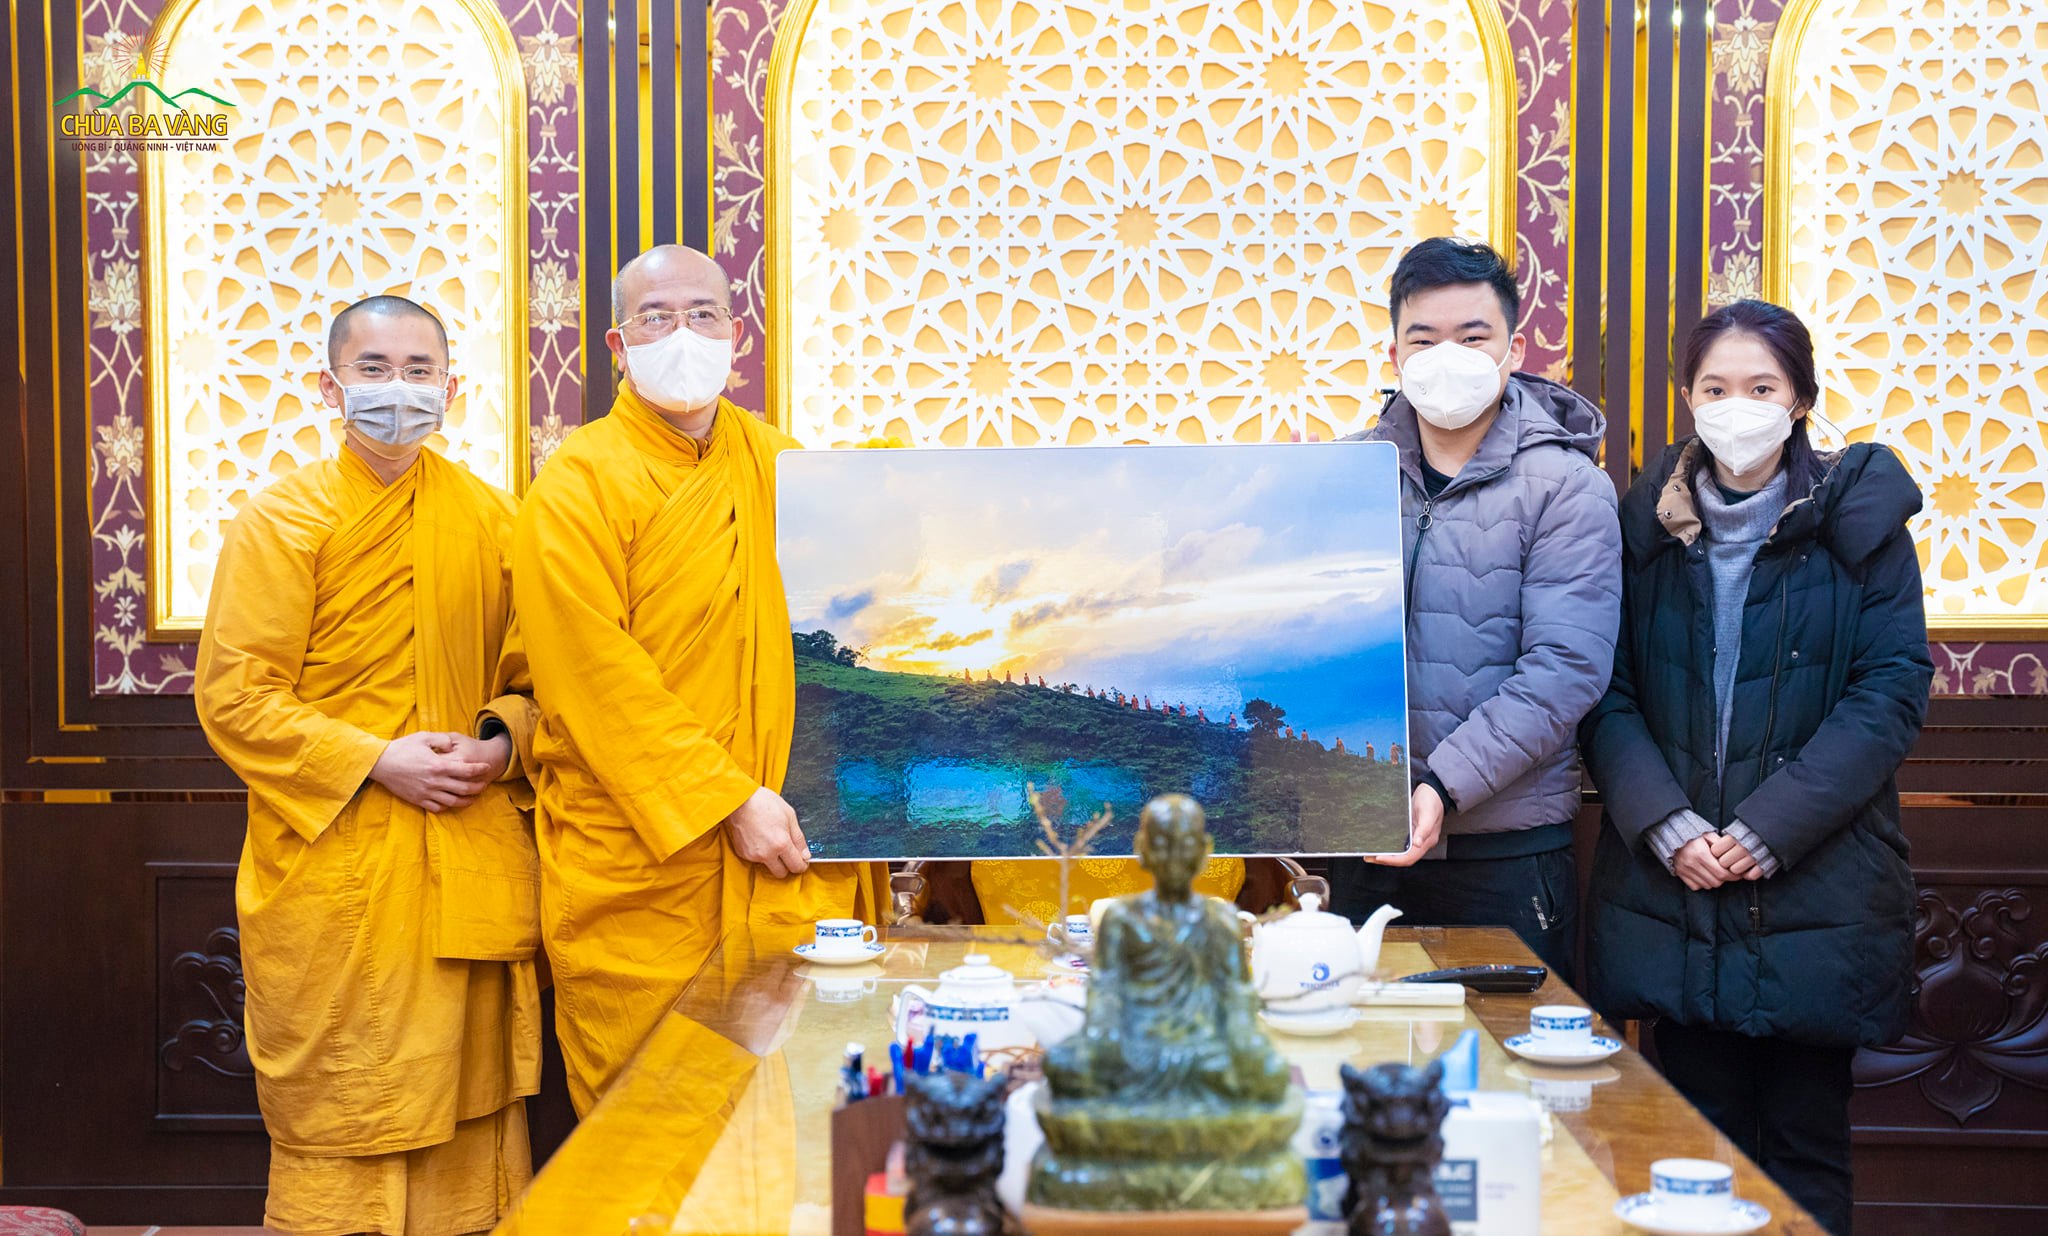 Phật tử Nguyễn Khắc Tuấn Anh cúng dường Sư Phụ bức ảnh Tăng đoàn chùa Ba Vàng kinh hành trong rừng do chính anh chụp được